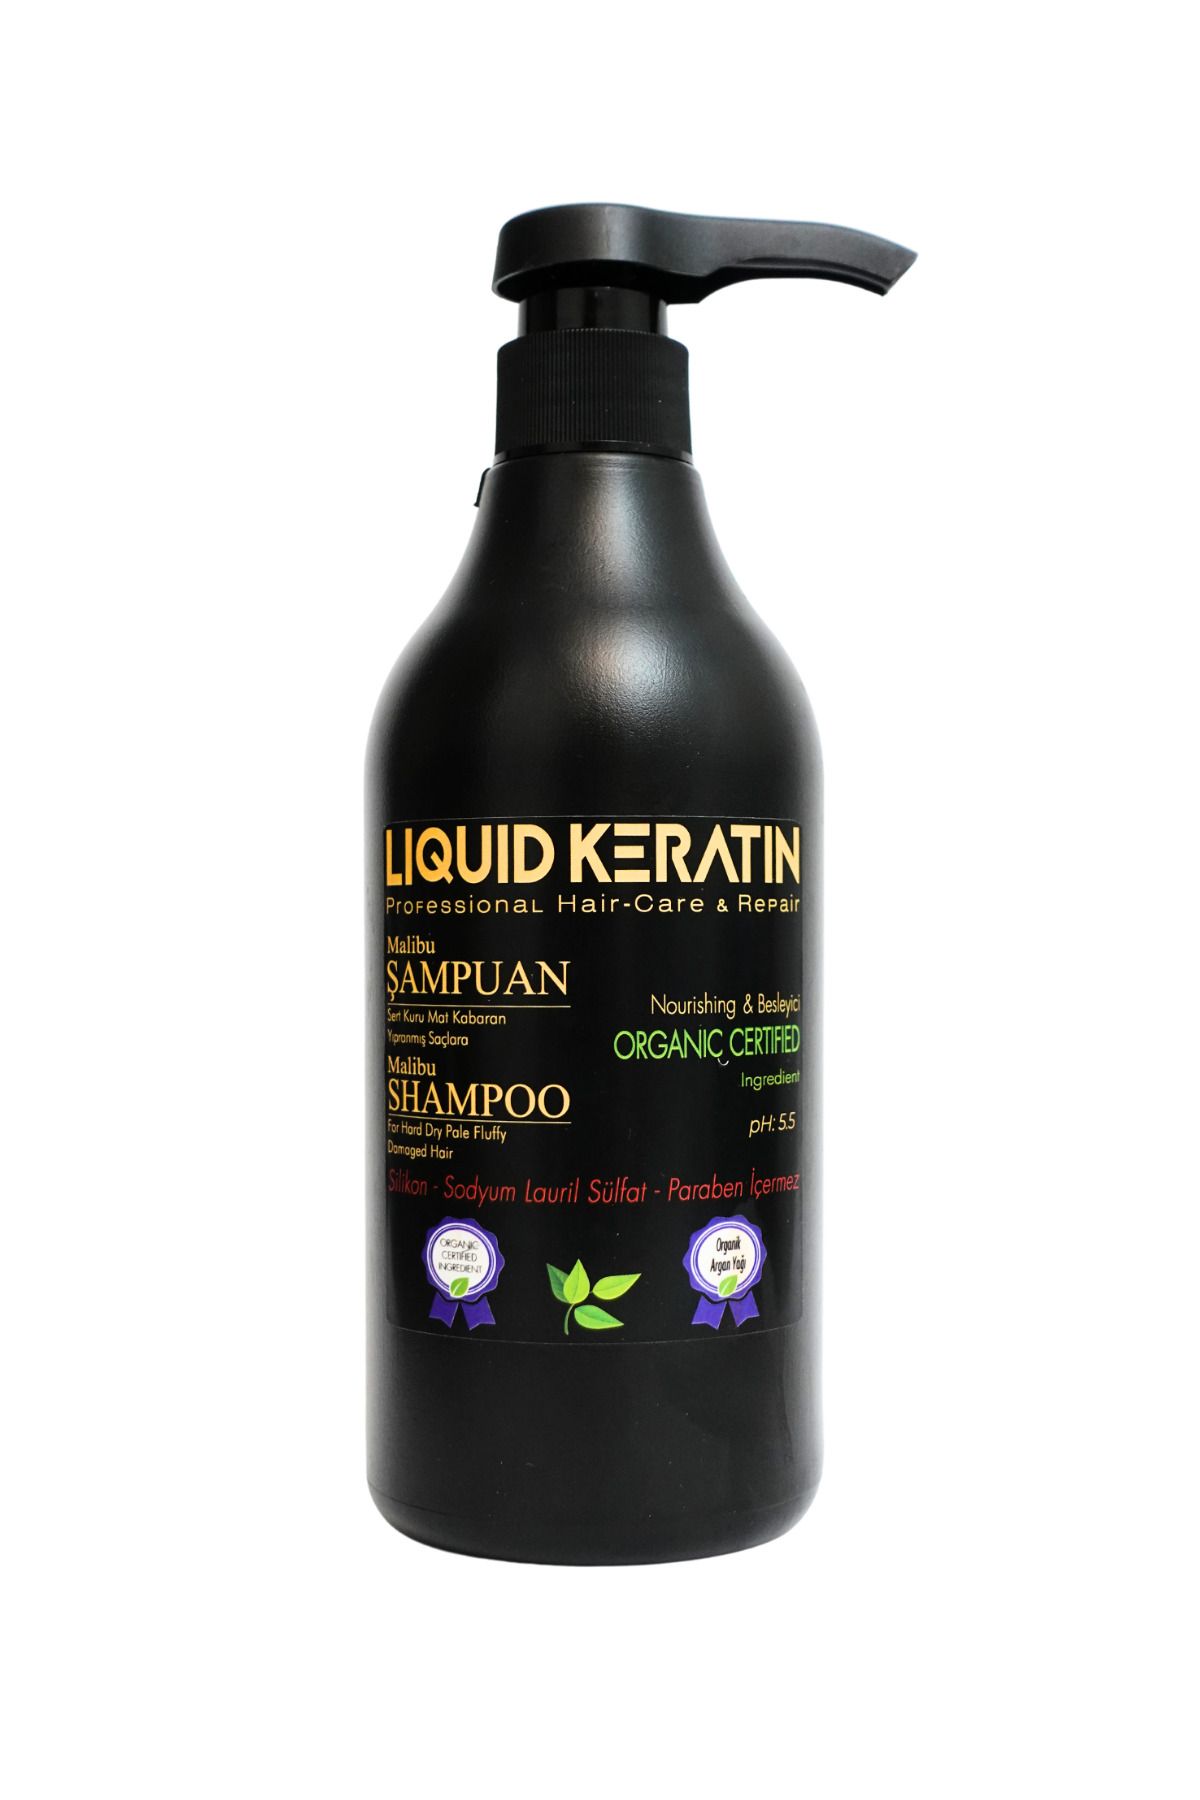 Liquid Keratin Kuru Mat Sert Saçlara Malibu Keratin Şampuanı (500ML)